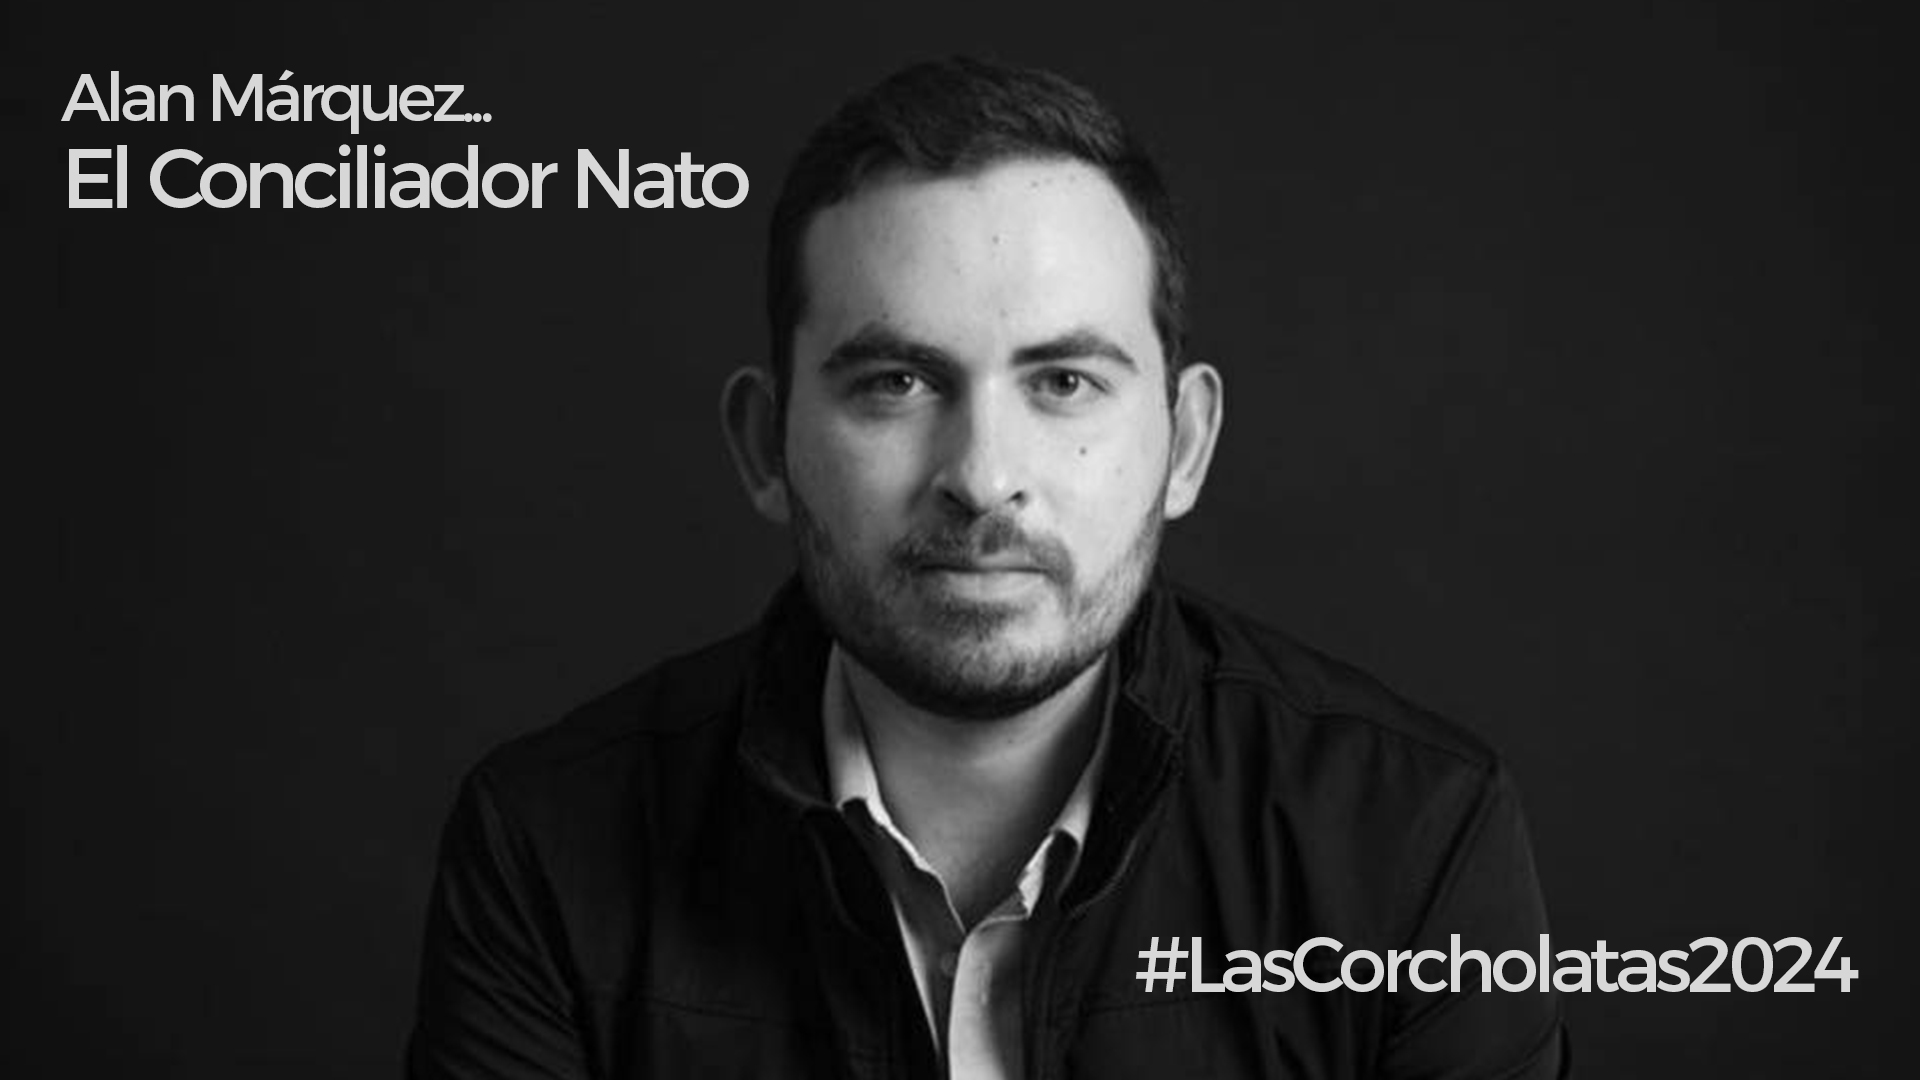 Alan Sahir Márquez… El Conciliador Nato #LasCorcholatas2024